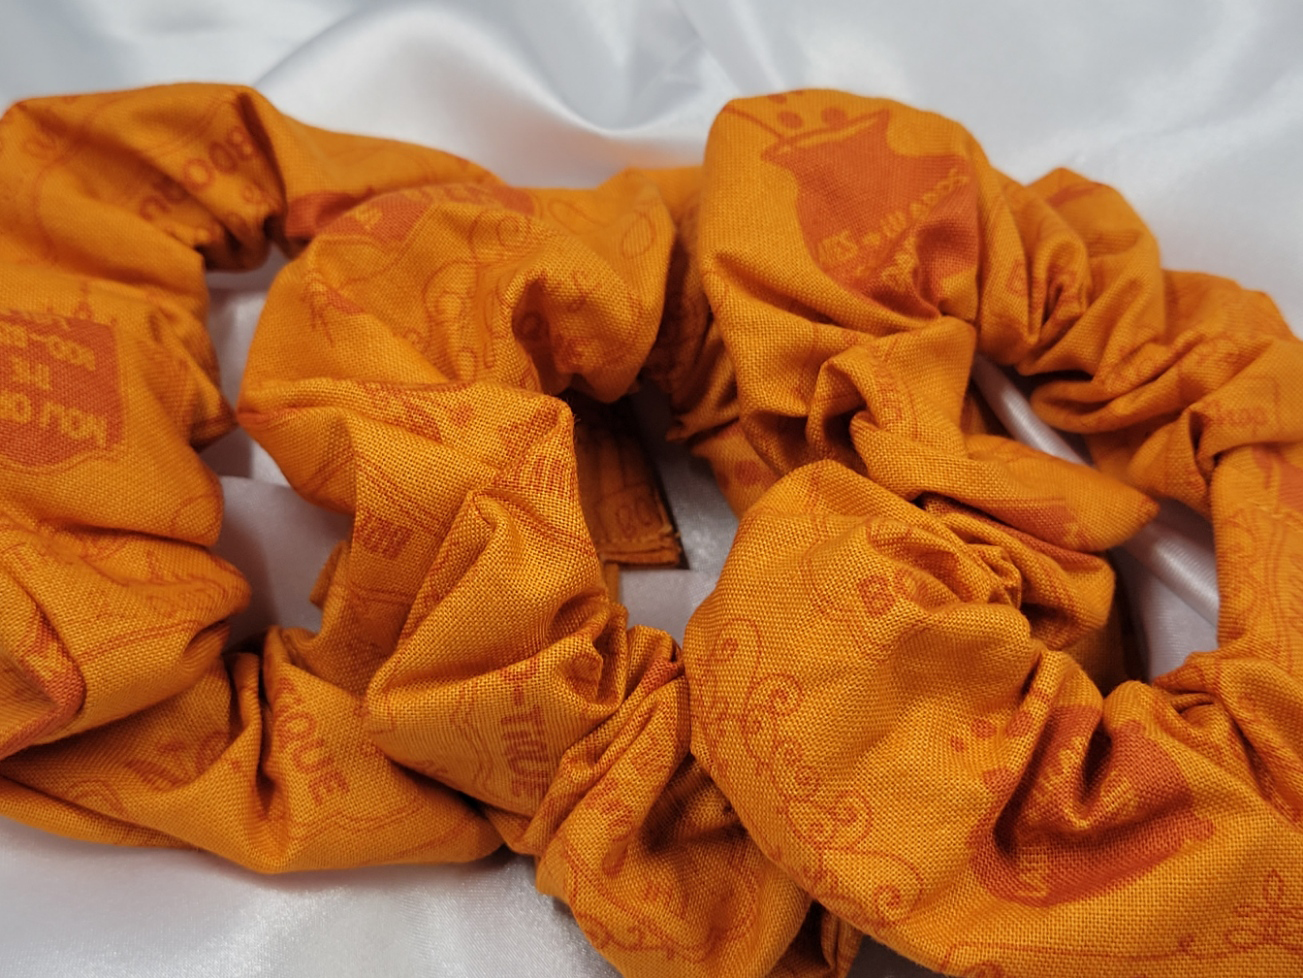 Hometown Halloween Orange Shop Signs Cotton Scrunchies